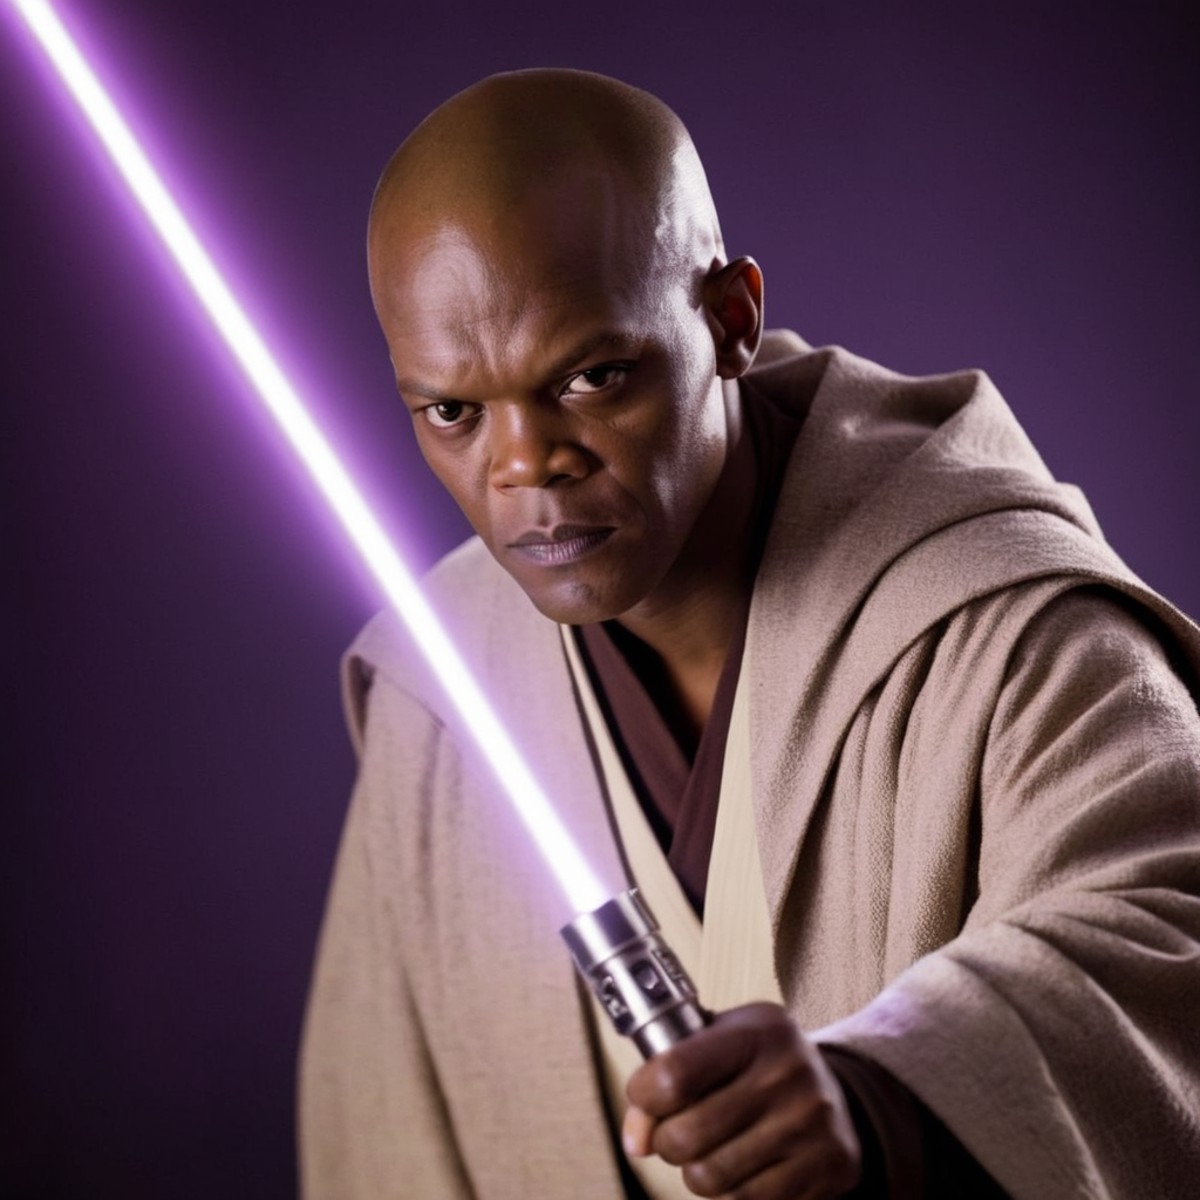 cinematic film still of  <lora:Mace Windu:1.2>
Mace Windu a man in a robe holding a purple light saber in star wars univer...